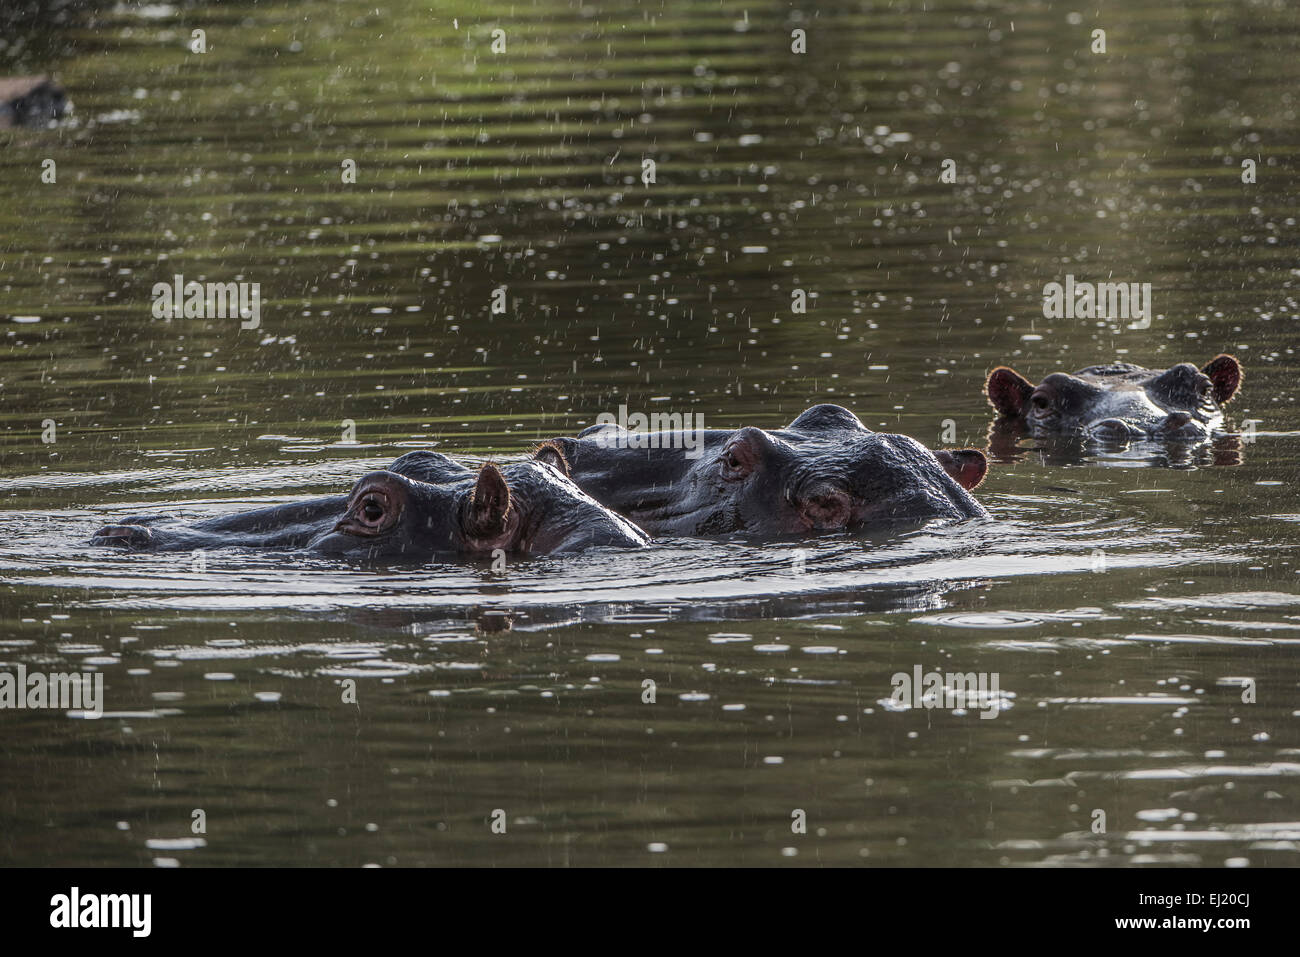 Hippopotamus,Hippopotamus amphibius,Nilpferd,Flusspferd, Stock Photo